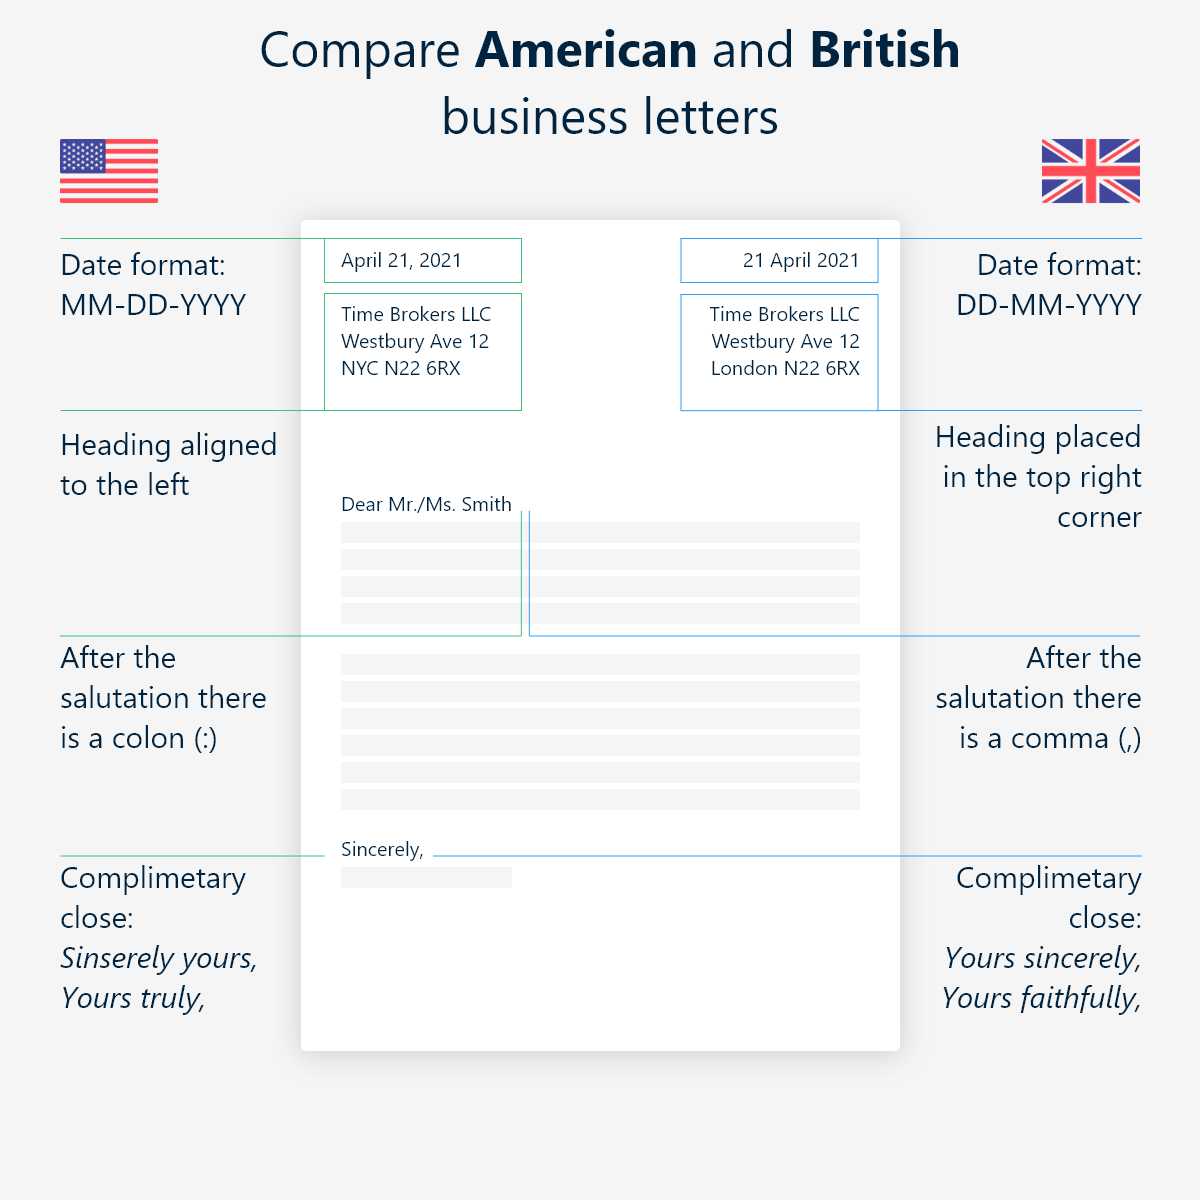 Listy brytyjskie i amerykańskie: różnice